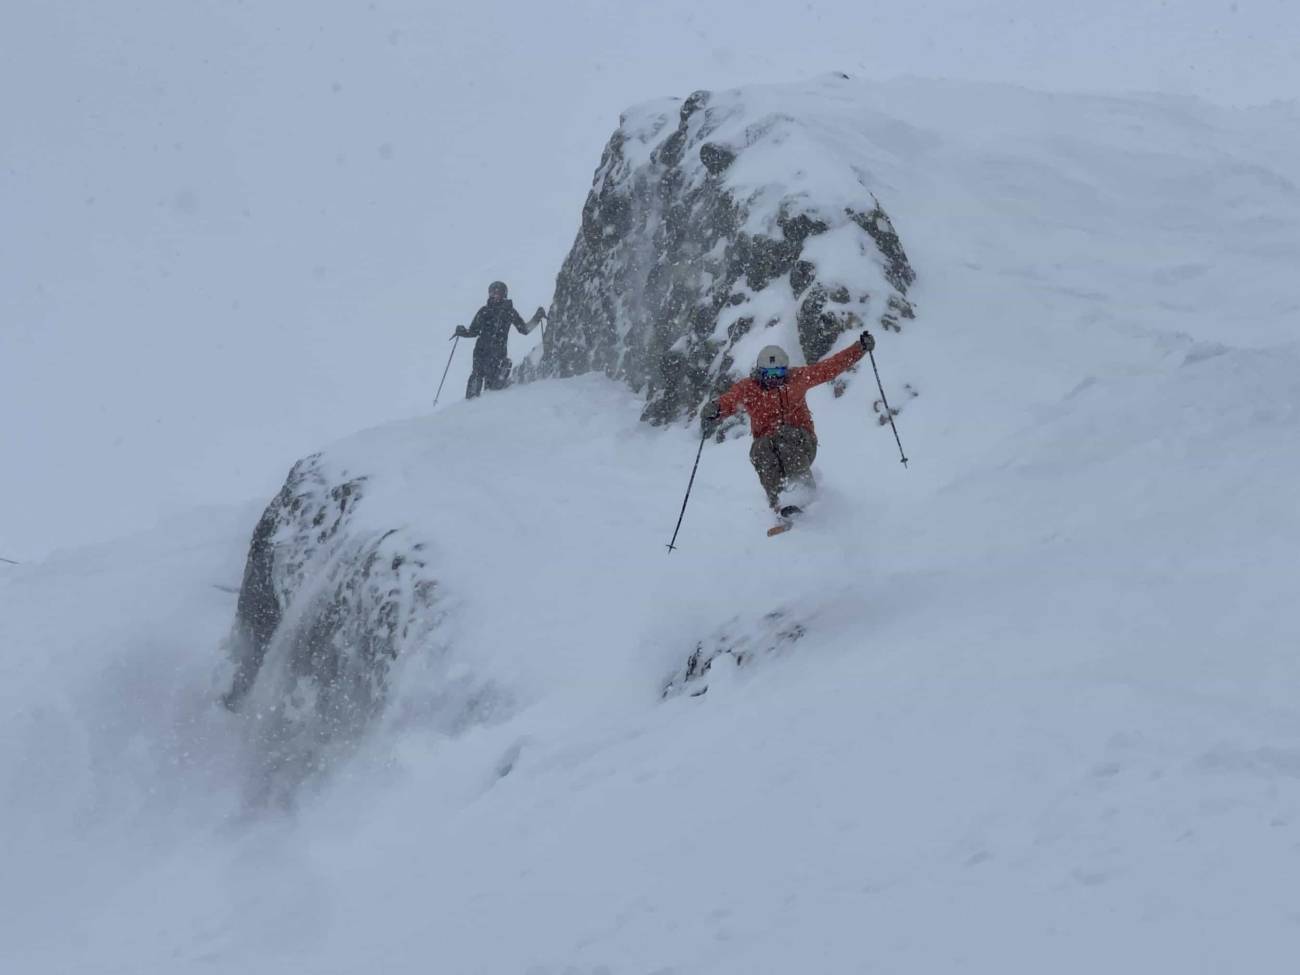 skier getting air off snowy rock